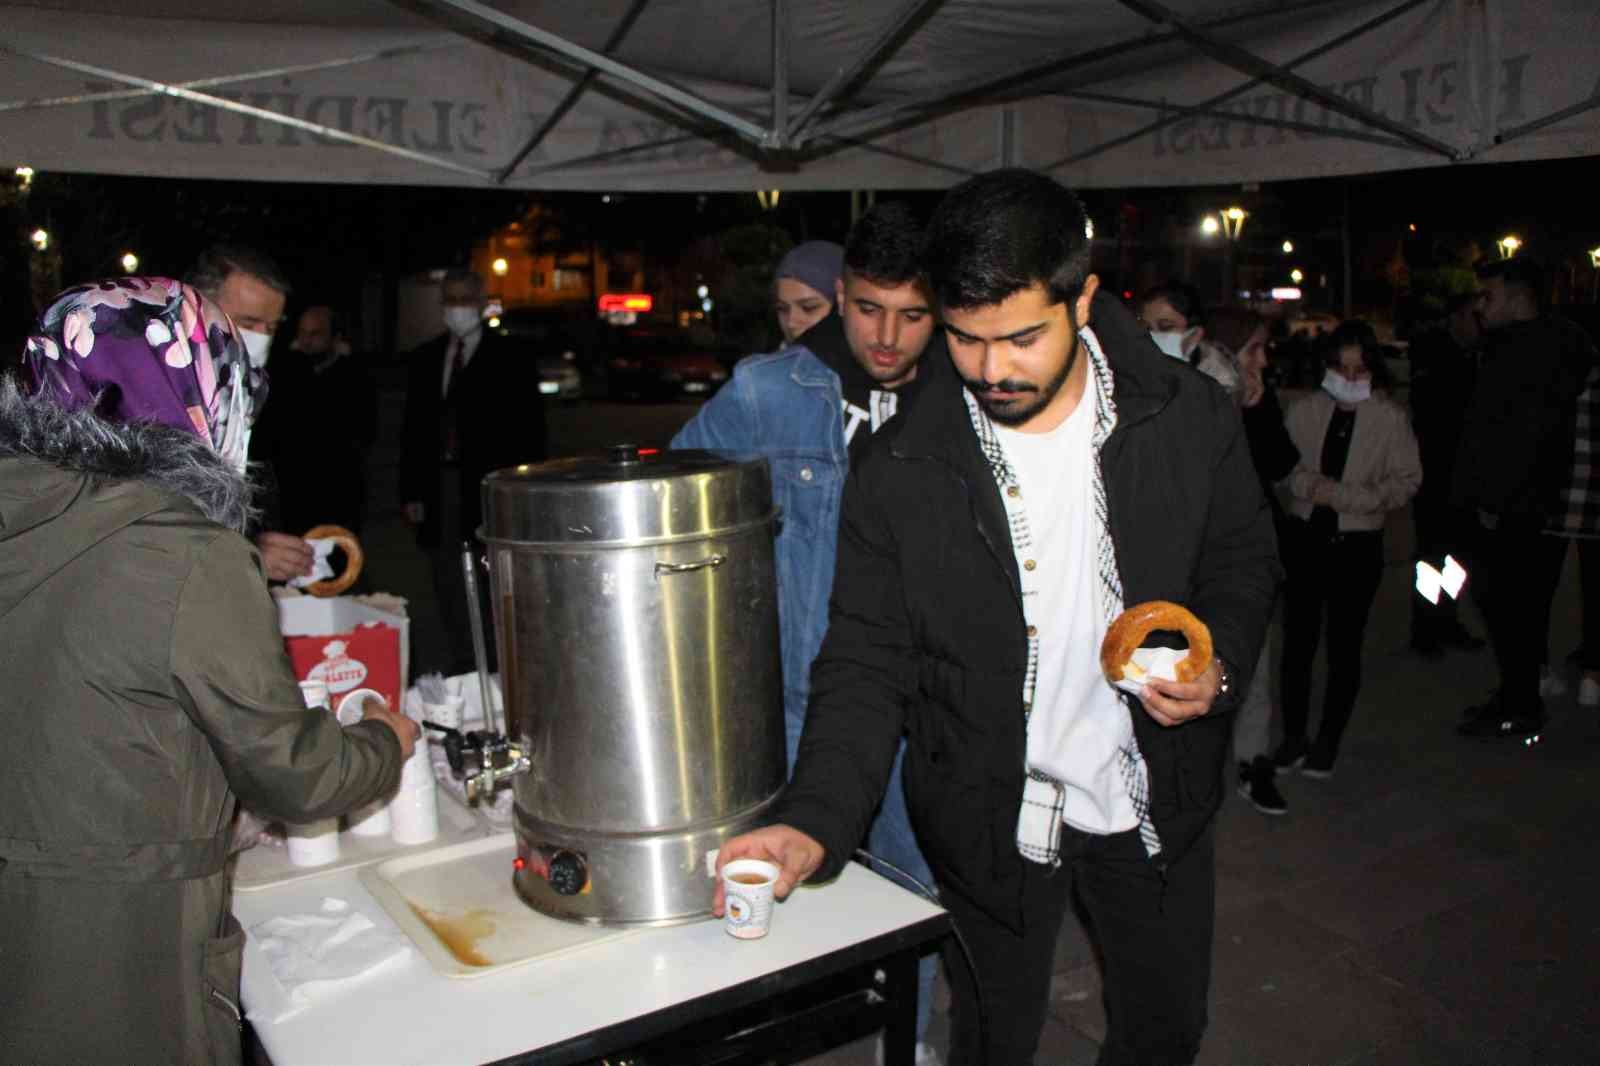 Amasya Üniversitesinde gece ders çalışan öğrencilere ücretsiz çay, simit ve çorba ikramı #amasya